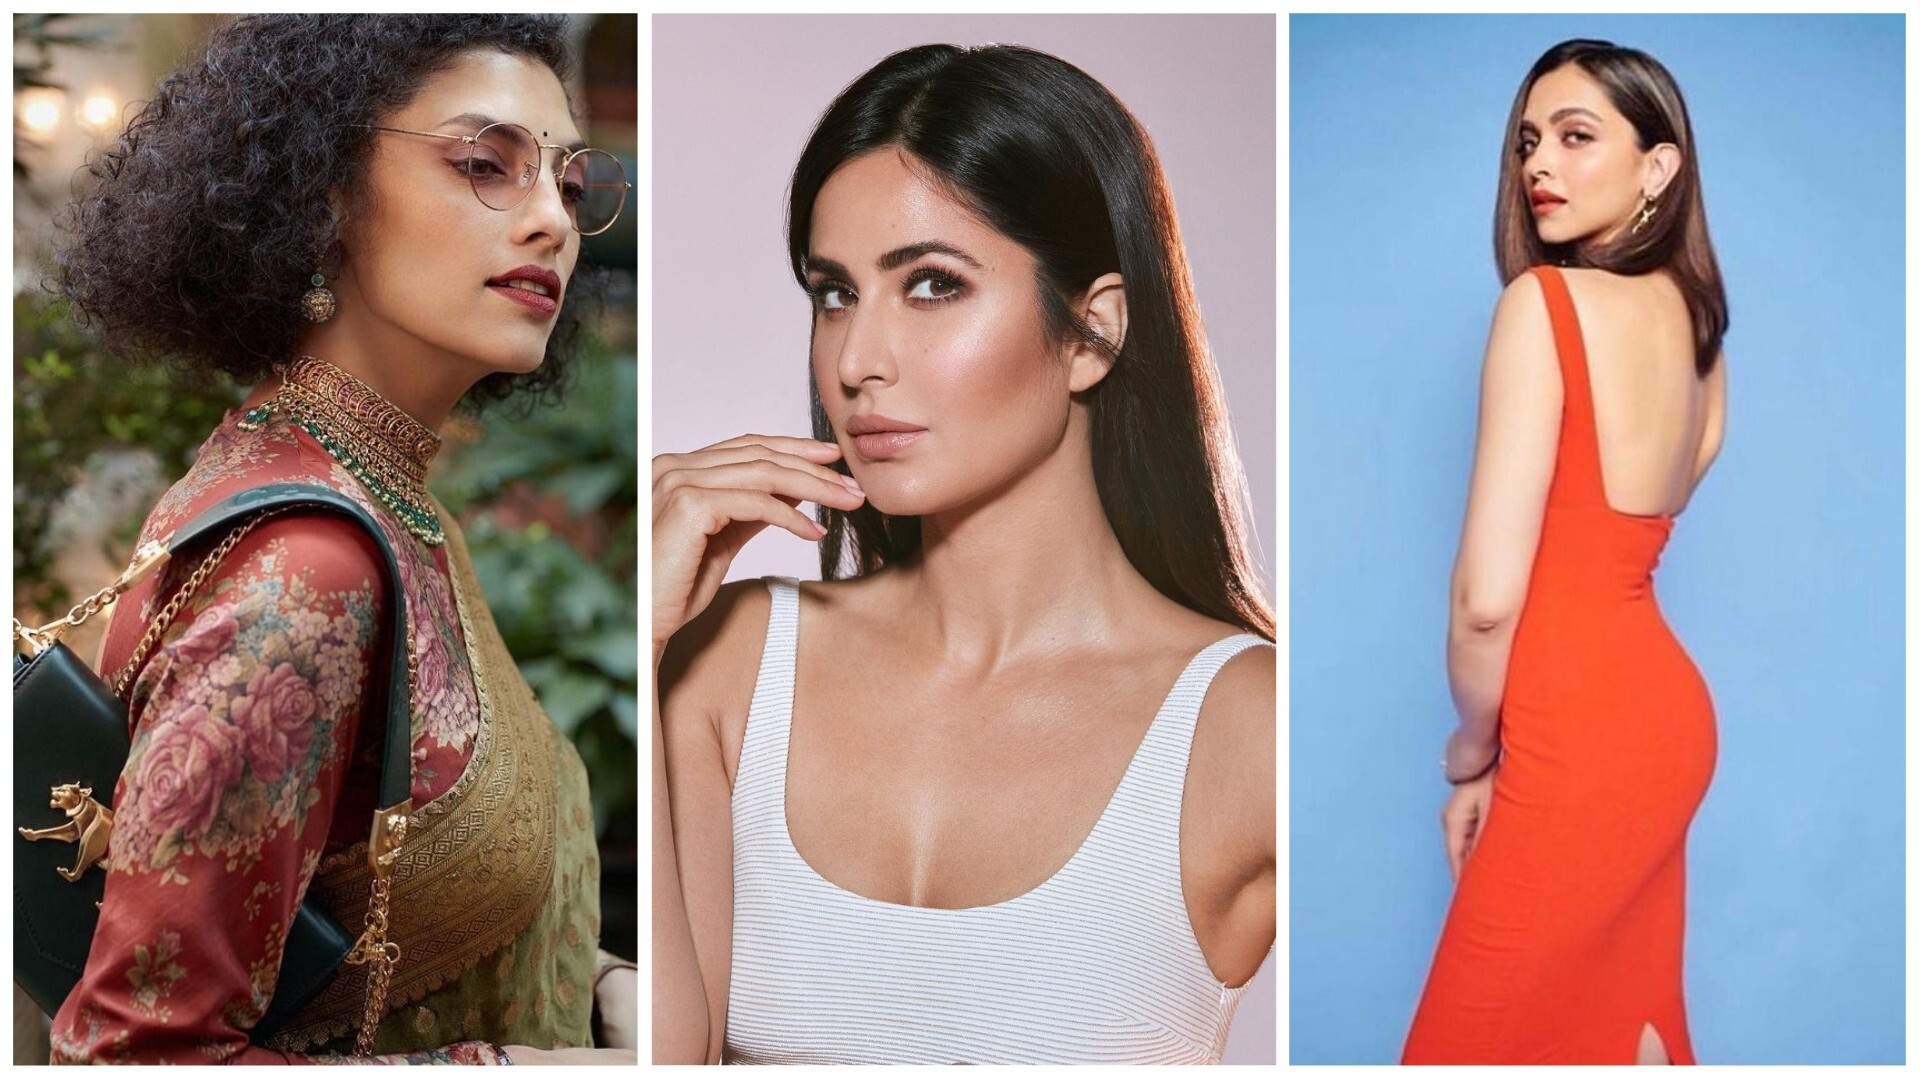 From left, Diwali 2020 stylings from Sabyasachi, and actresses Katrina Kaif and Deepika Padukone. Photo: @sabyasachiofficial, @katrinakaif, @shaleenanathani/Instagram